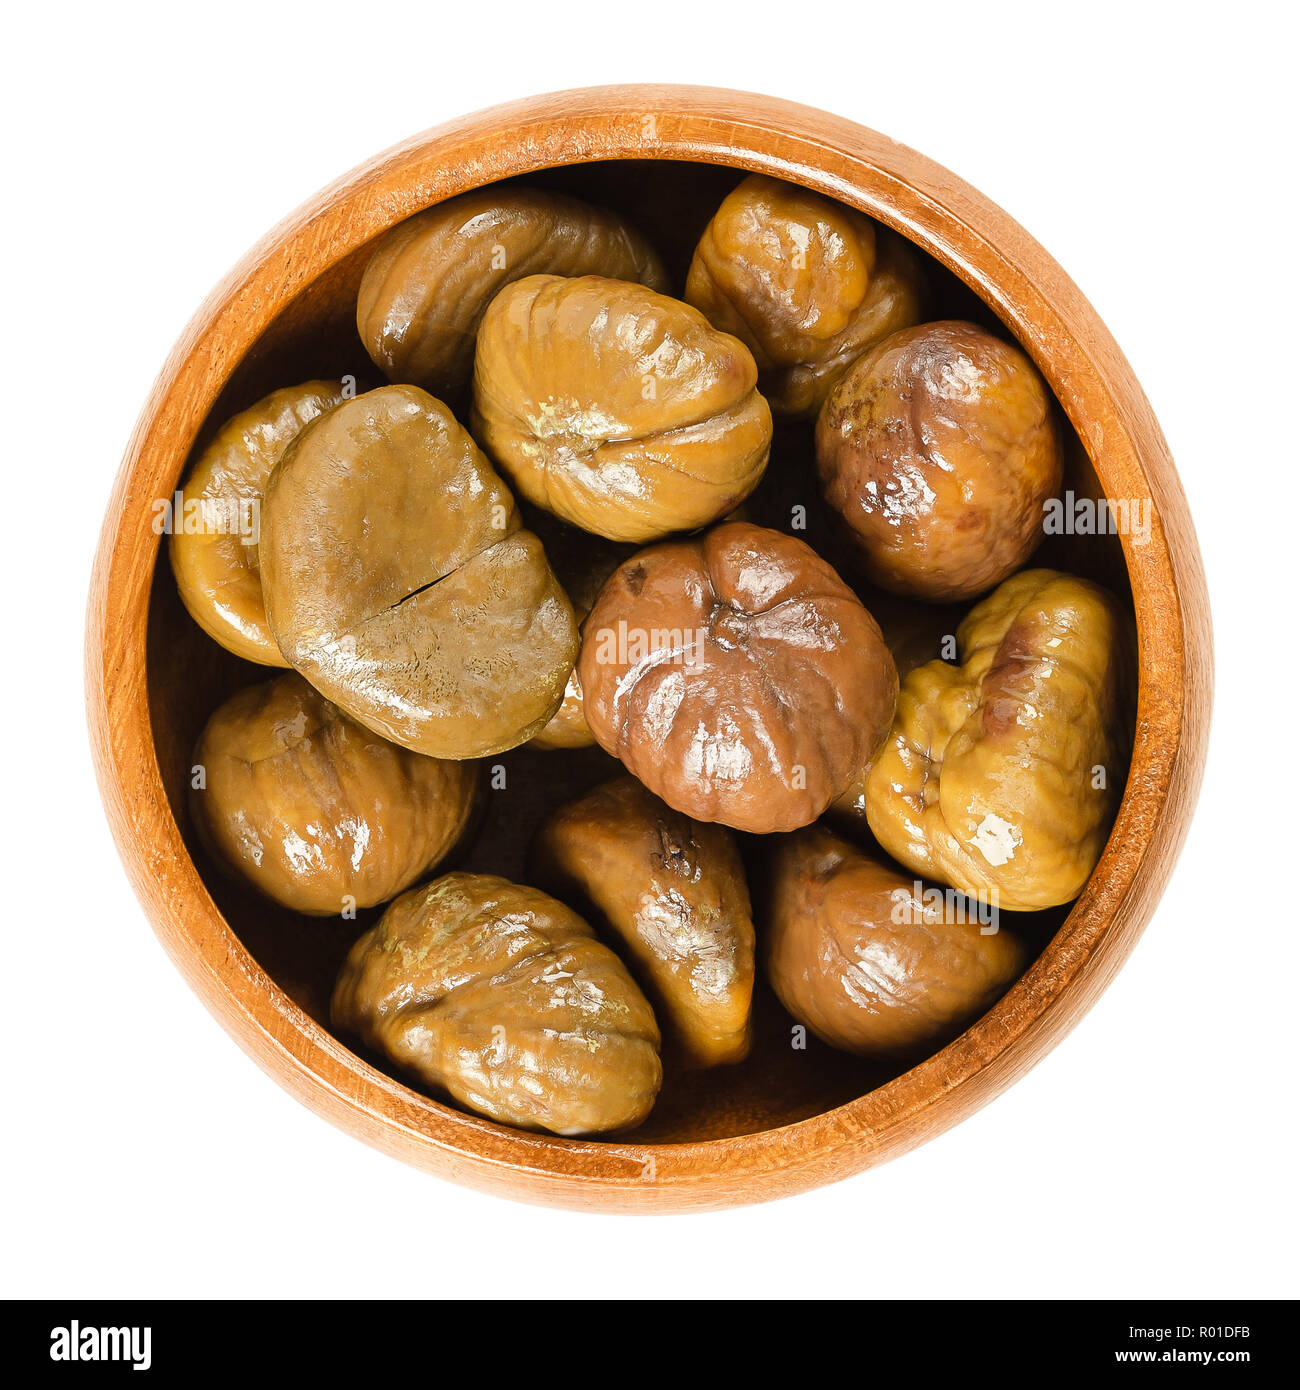 Gekochte Kastanien in Houten. Eßbare Samen oder Nüsse von Quercus robur, auch als Marron und Spanisch oder Portugiesisch Kastanie. Stockfoto